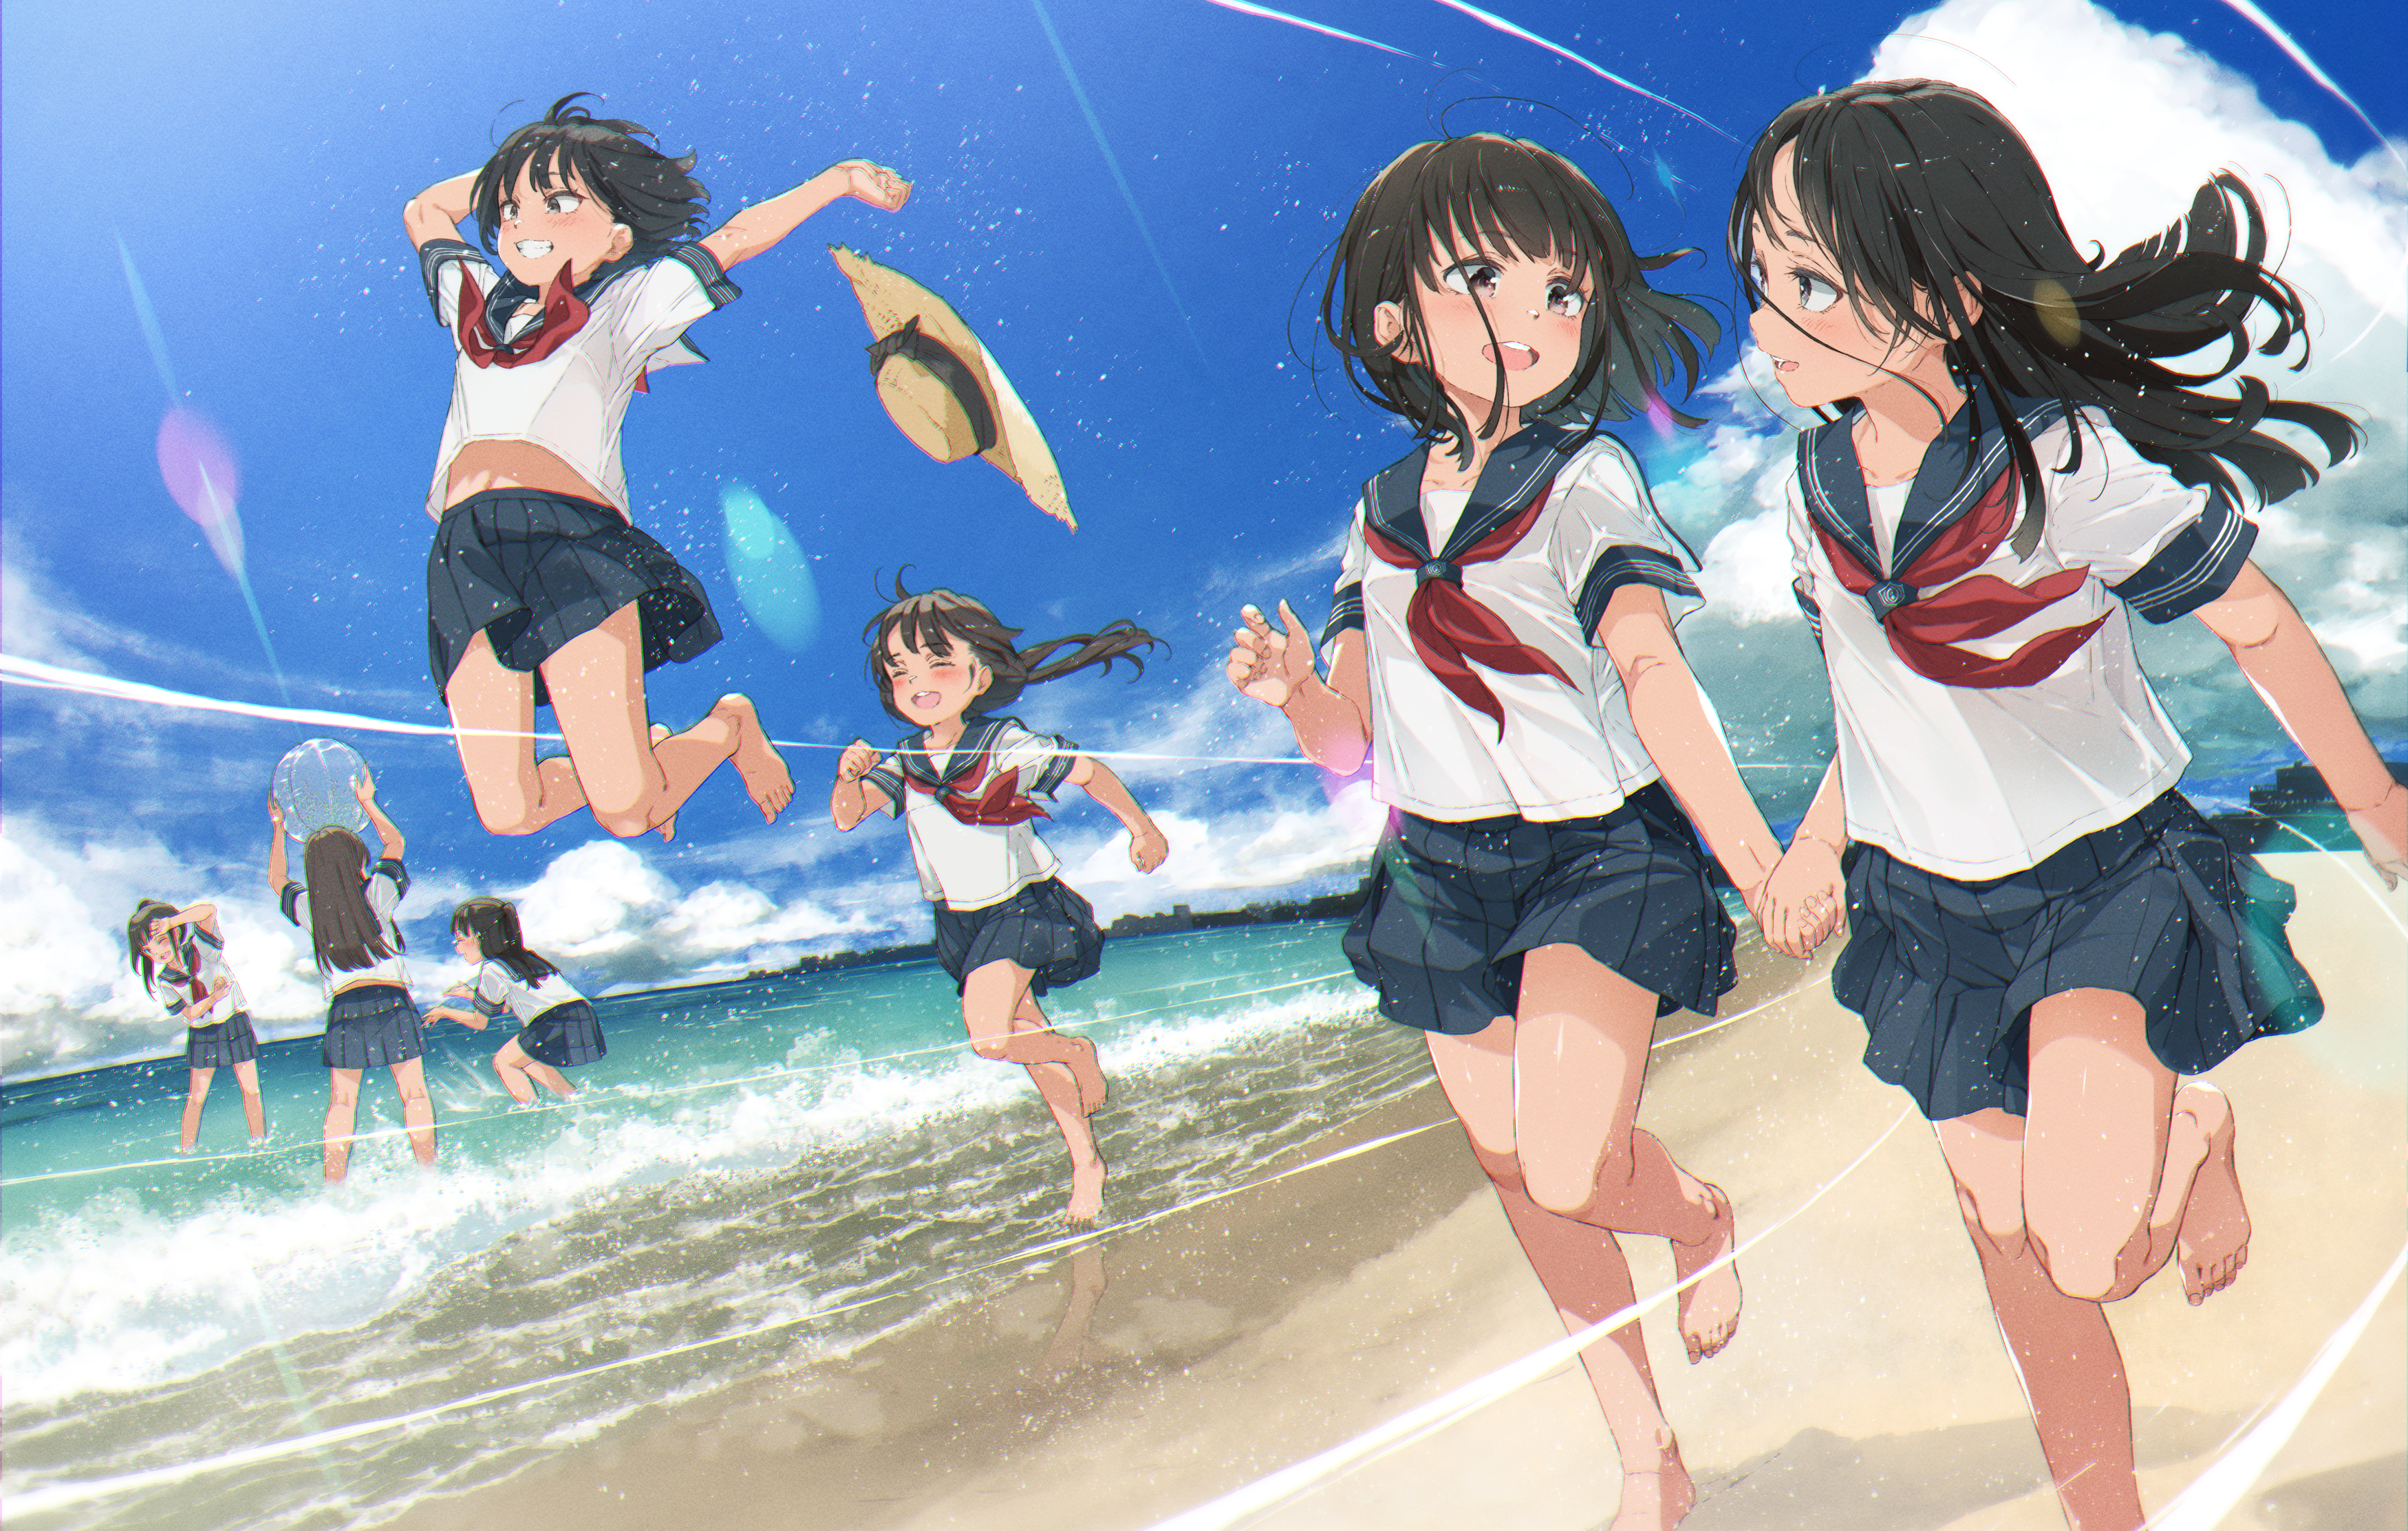 Anime Girls Straw Hat Running Group Of Women Standing In Water Water Schoolgirl School Uniform Women 3500x2226